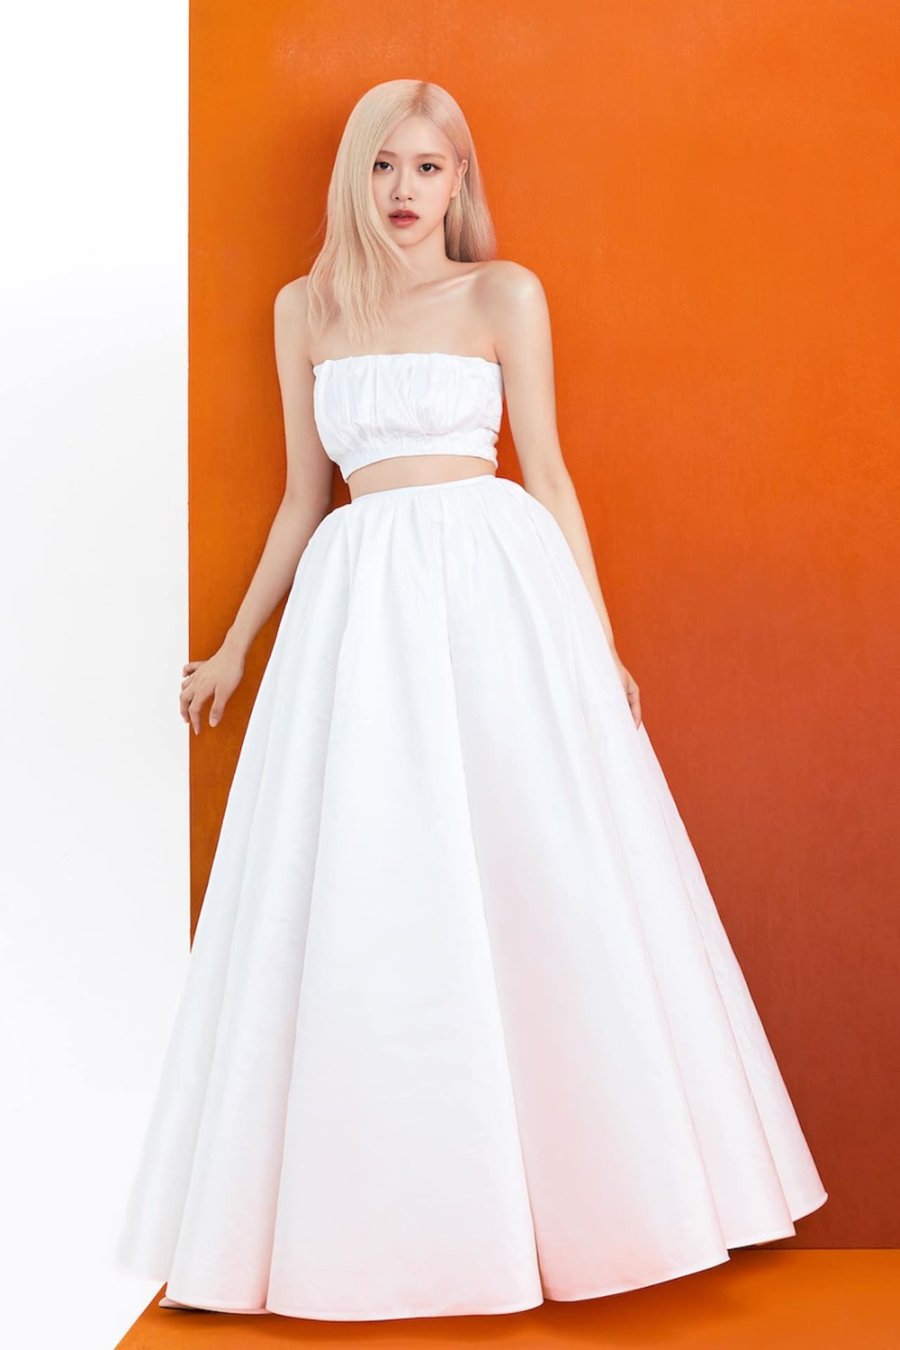 Hắc công chúa” Rosé và những lần diện váy trắng khiến fan “lo lắng”